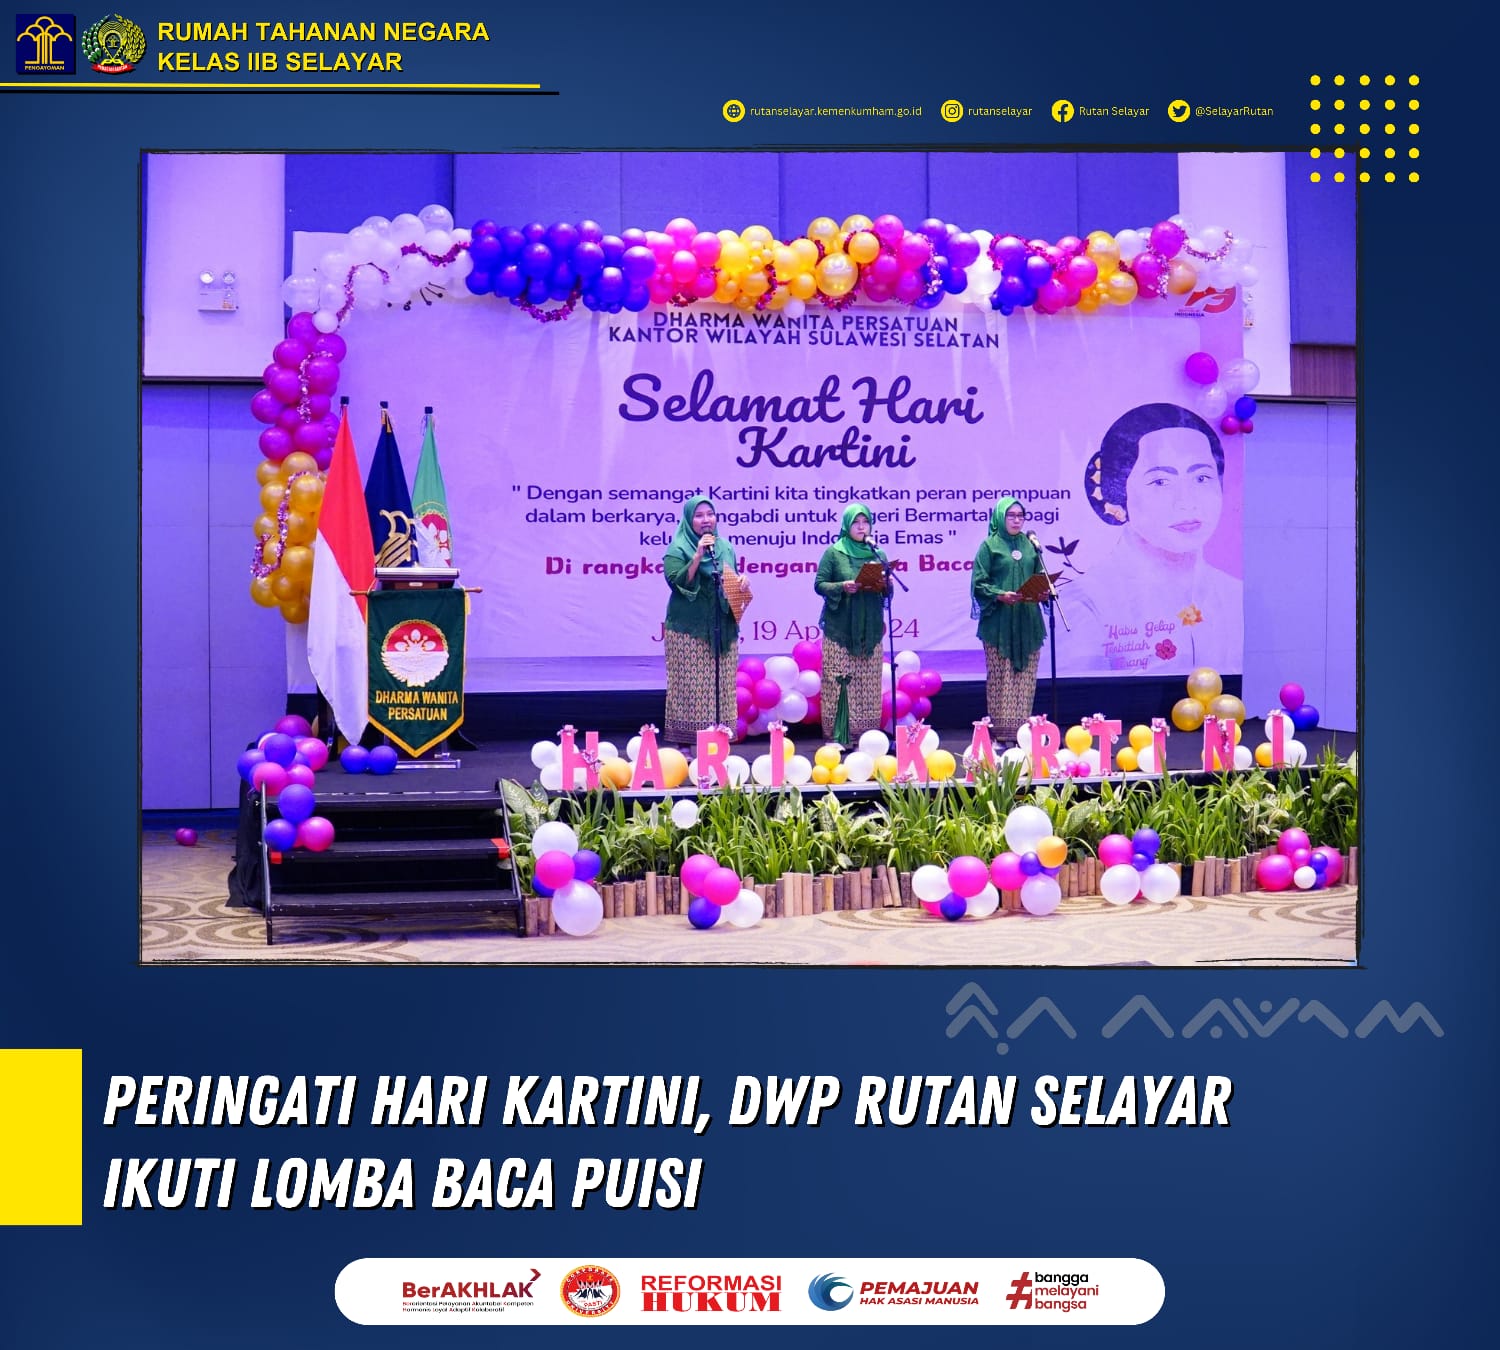 Peringati Hari Kartini, DWP Rutan Selayar Ikuti Lomba Baca Puisi